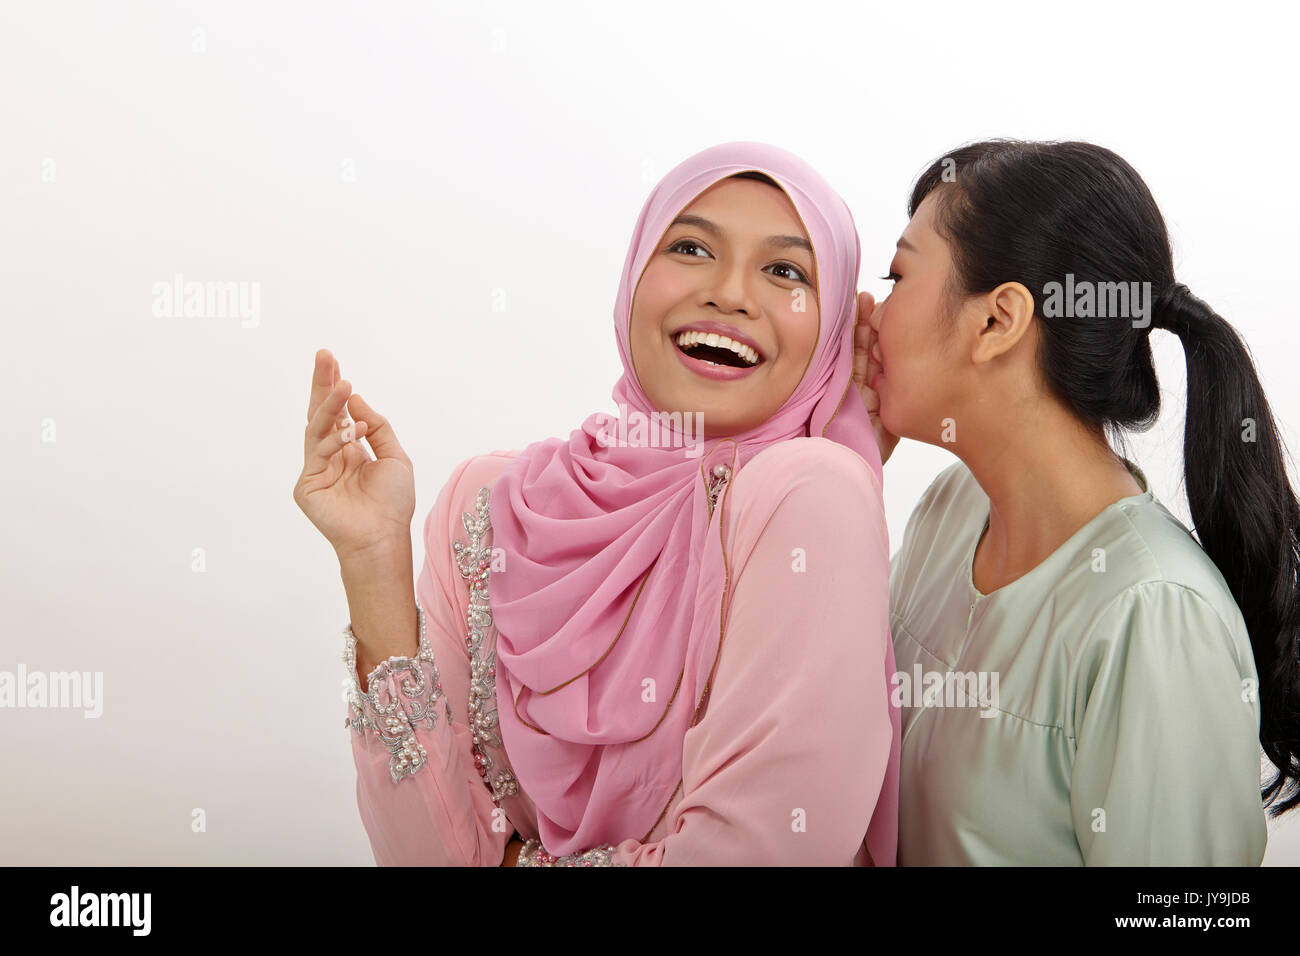 Zwei Mädchen im Teenager-Alter klatschen auf den weißen Hintergrund Stockfoto